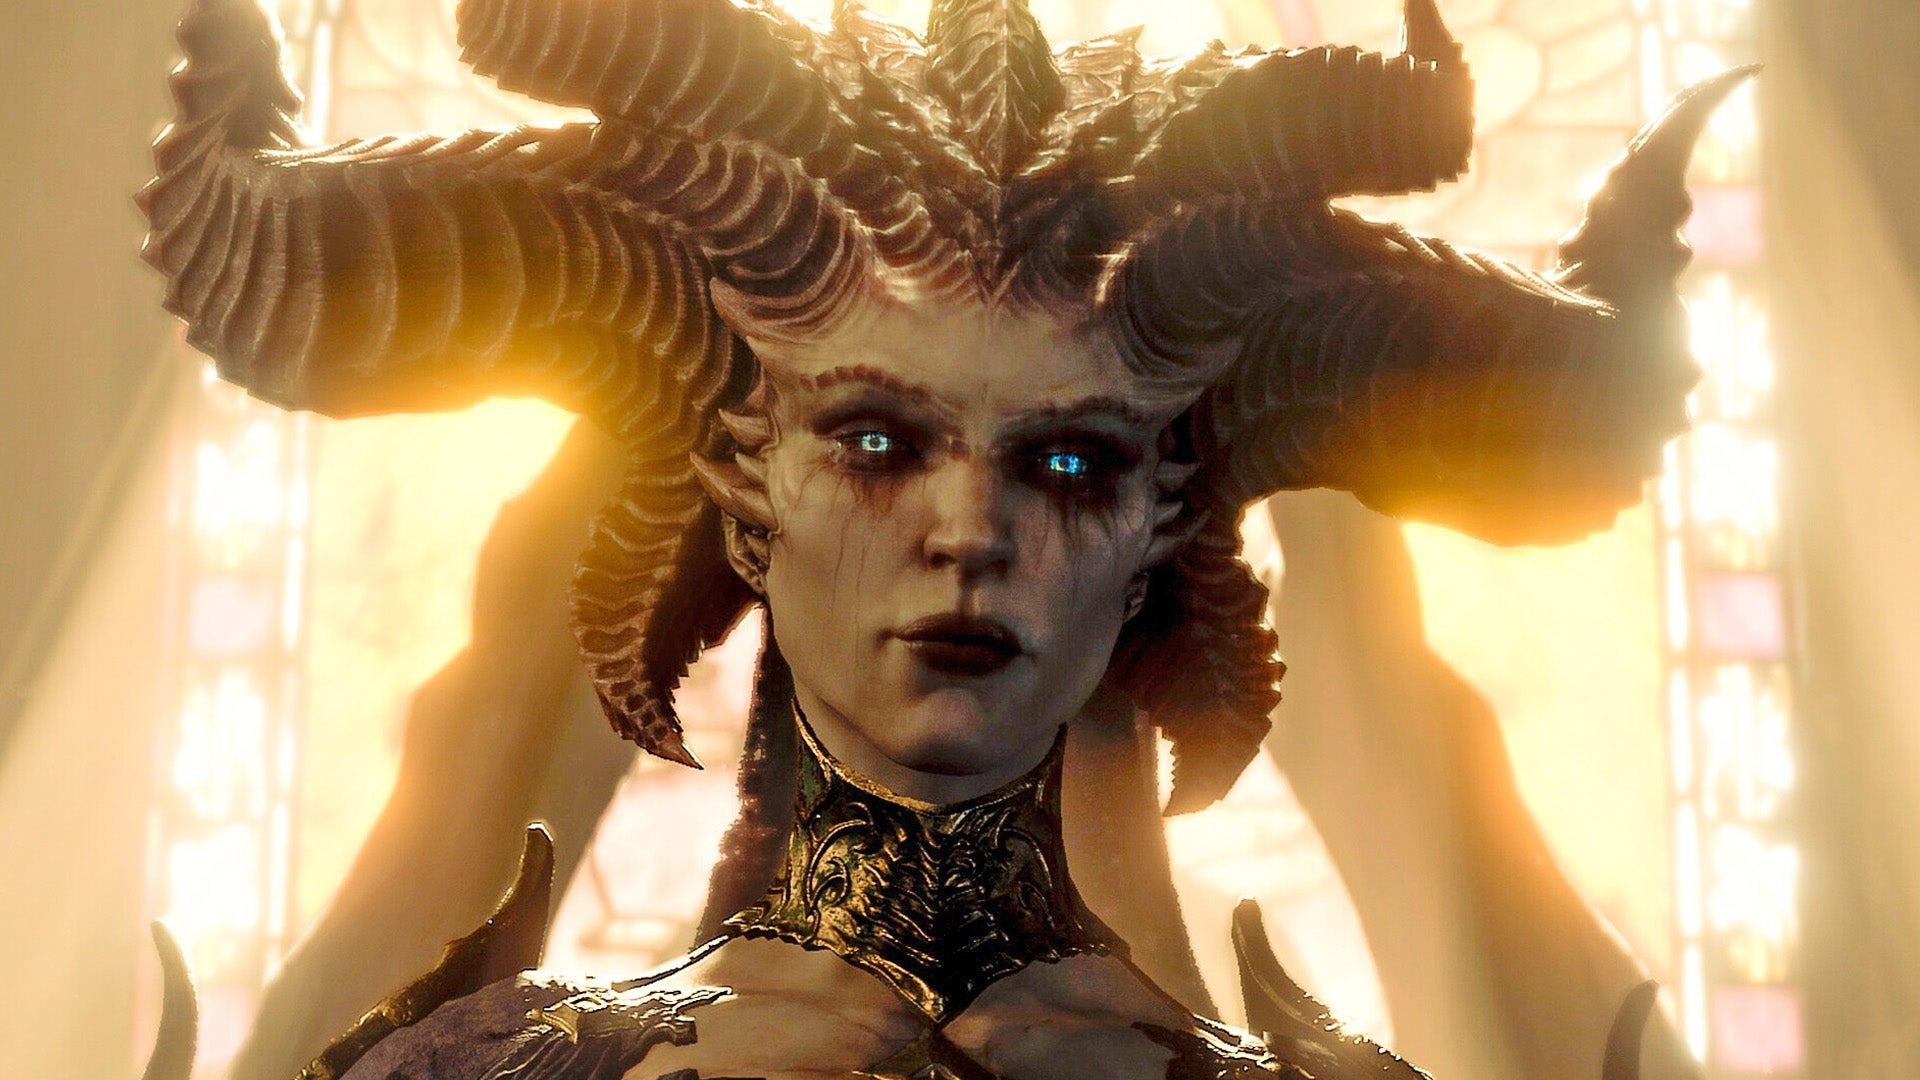 Obrazki dla Diablo 4 Ultimate Edition na zwiastunie. Blizzard zachęca do wersji ze skinami i Karnetem Bojowym